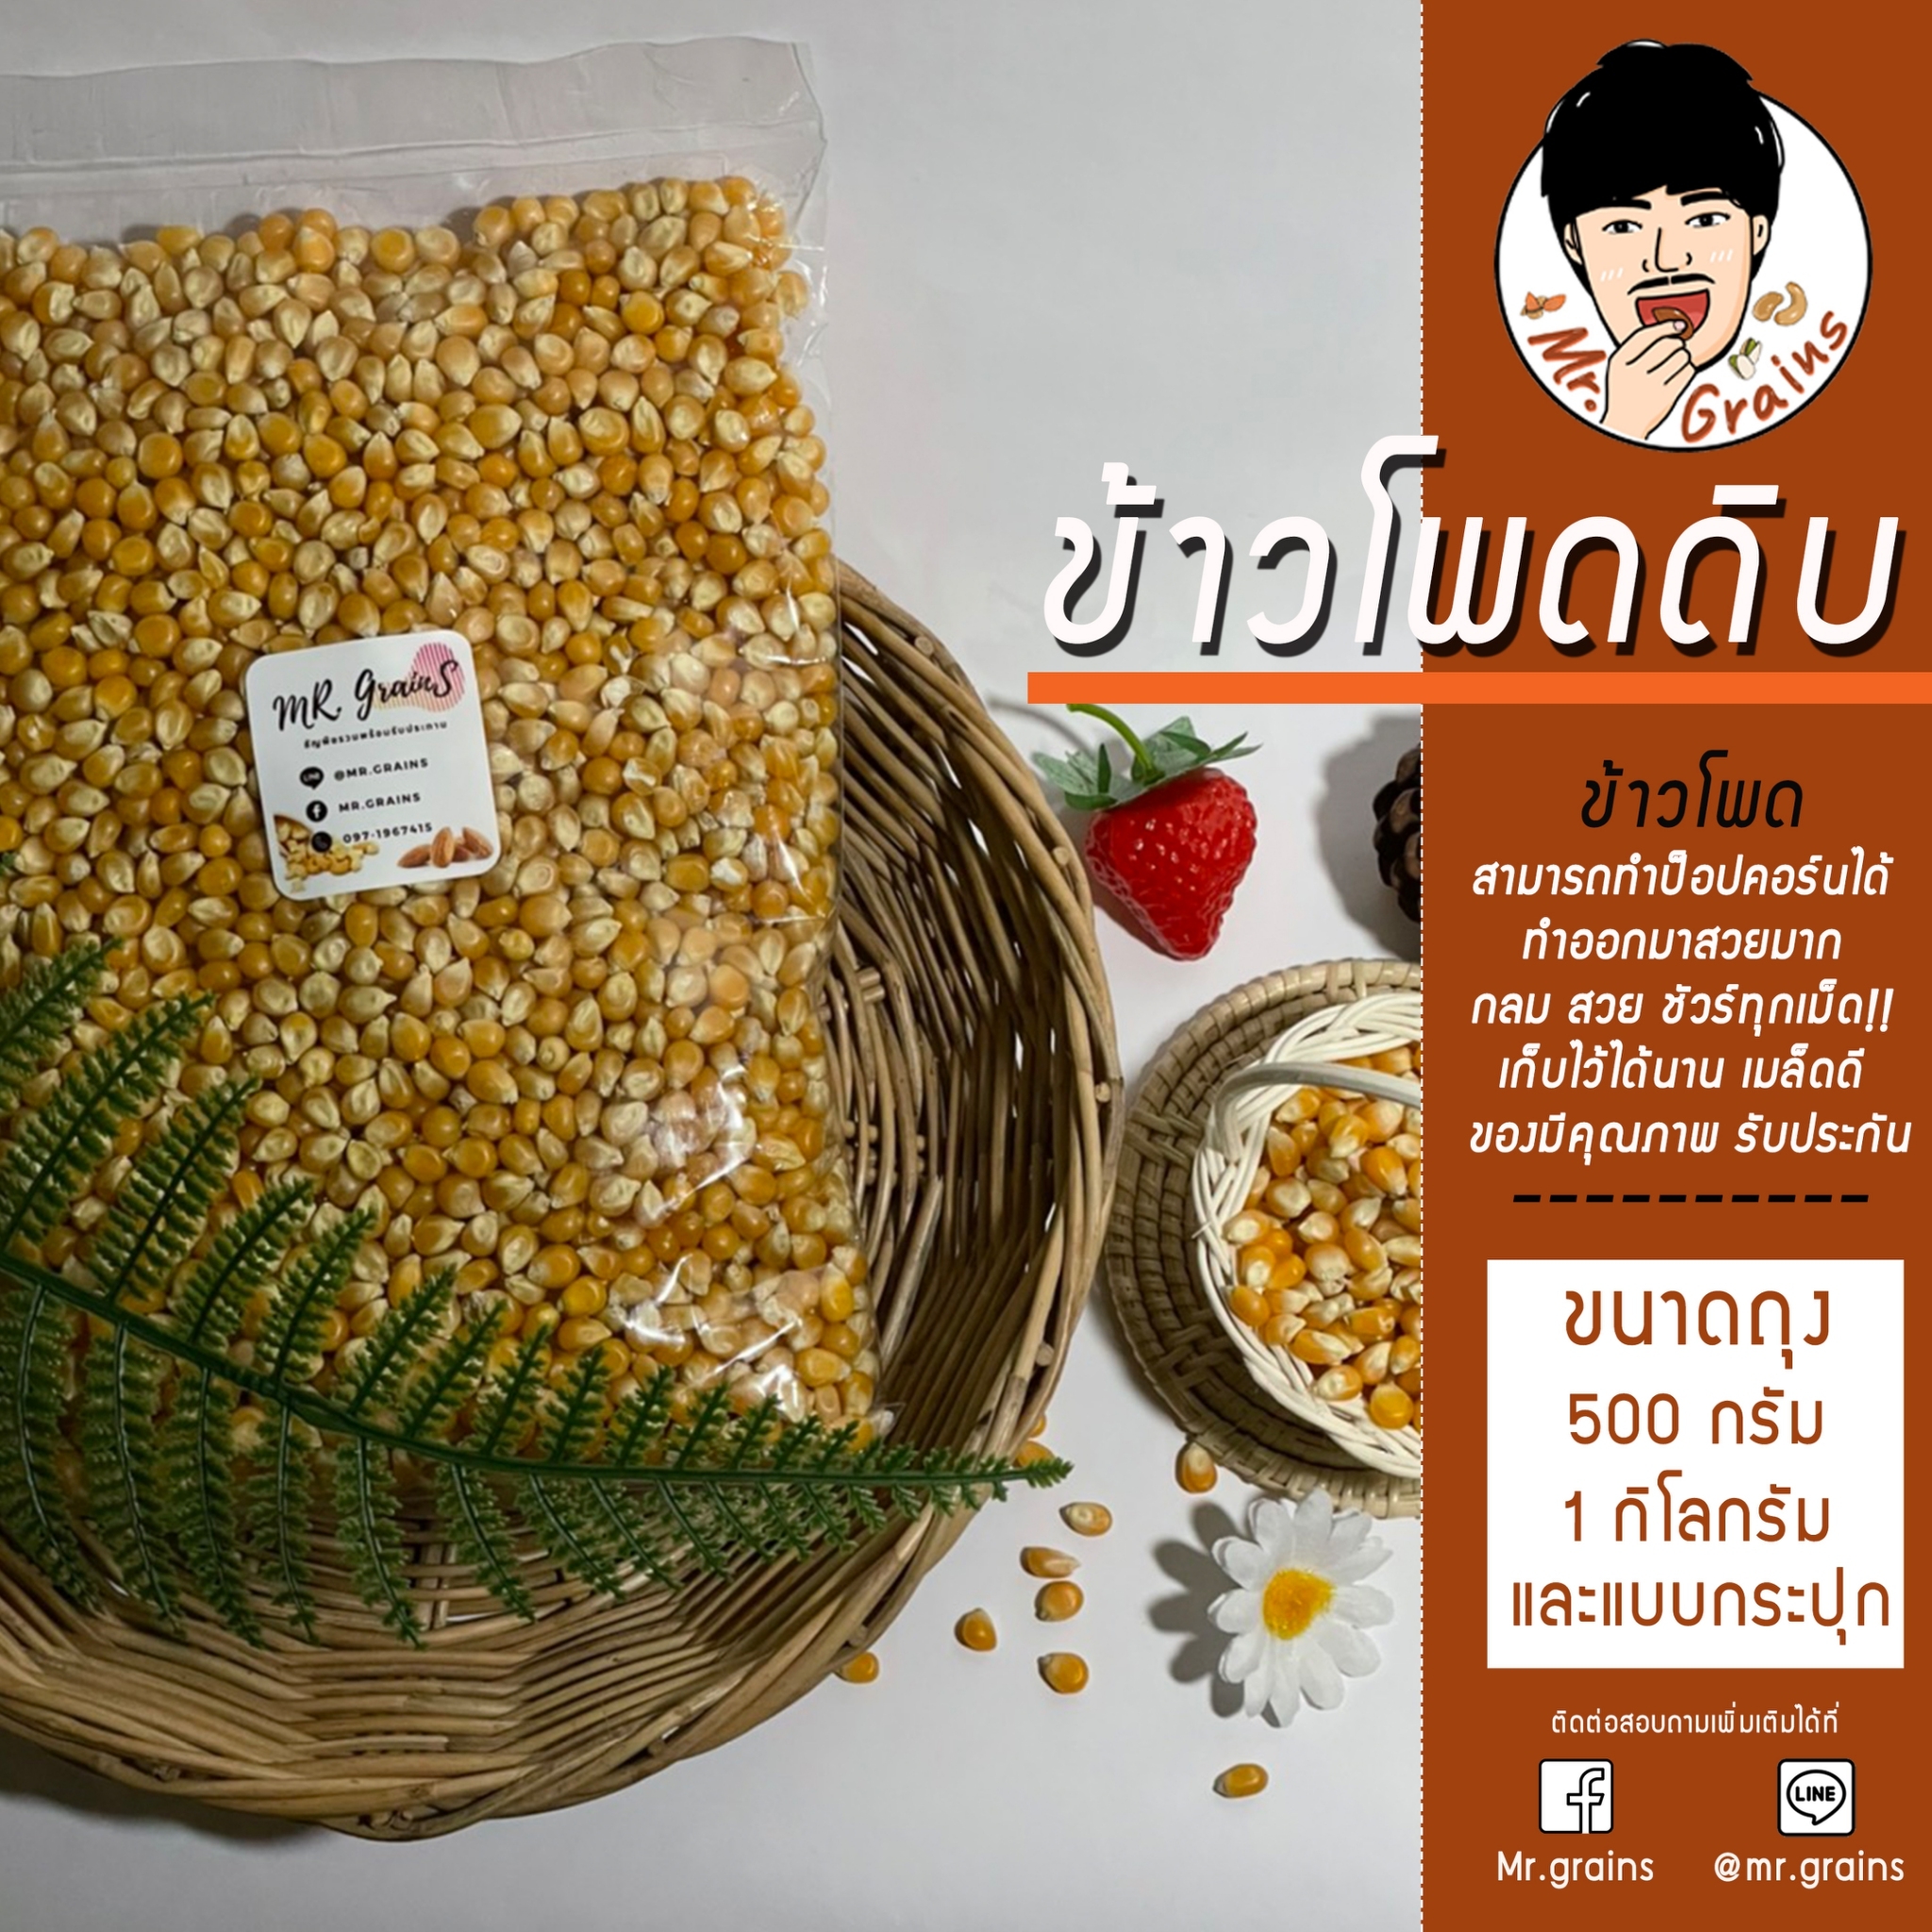 เมล็ดข้าวโพดดิบ มัชรูม [ขนาด 1,000 กรัม] Popcorn Premium Mushroom kernels นำเข้าจาก USA